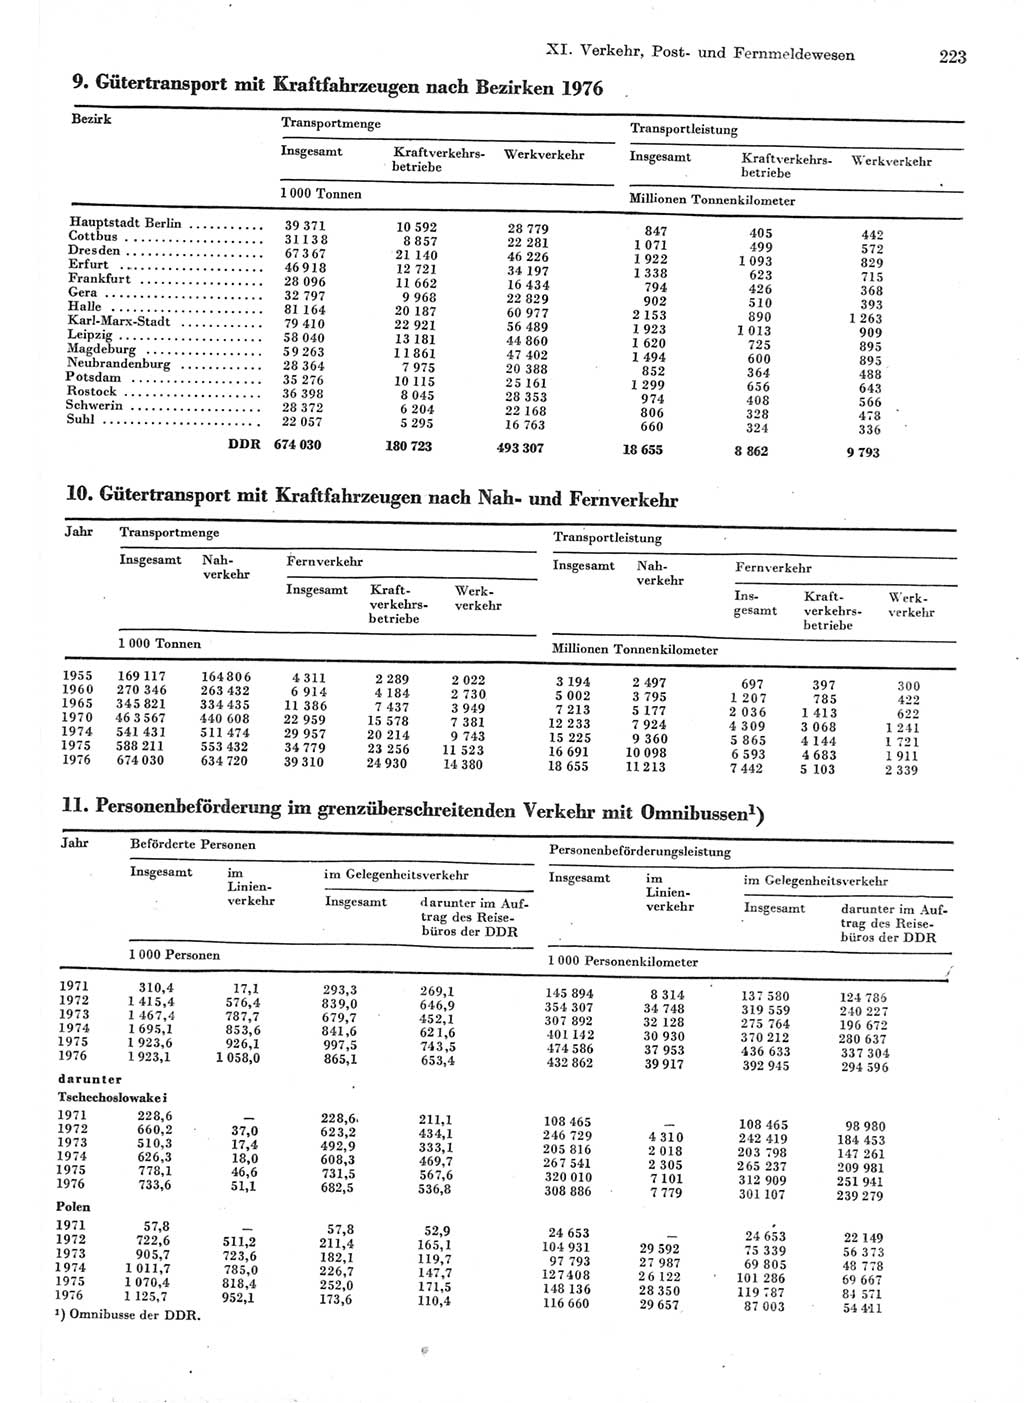 Statistisches Jahrbuch der Deutschen Demokratischen Republik (DDR) 1977, Seite 223 (Stat. Jb. DDR 1977, S. 223)